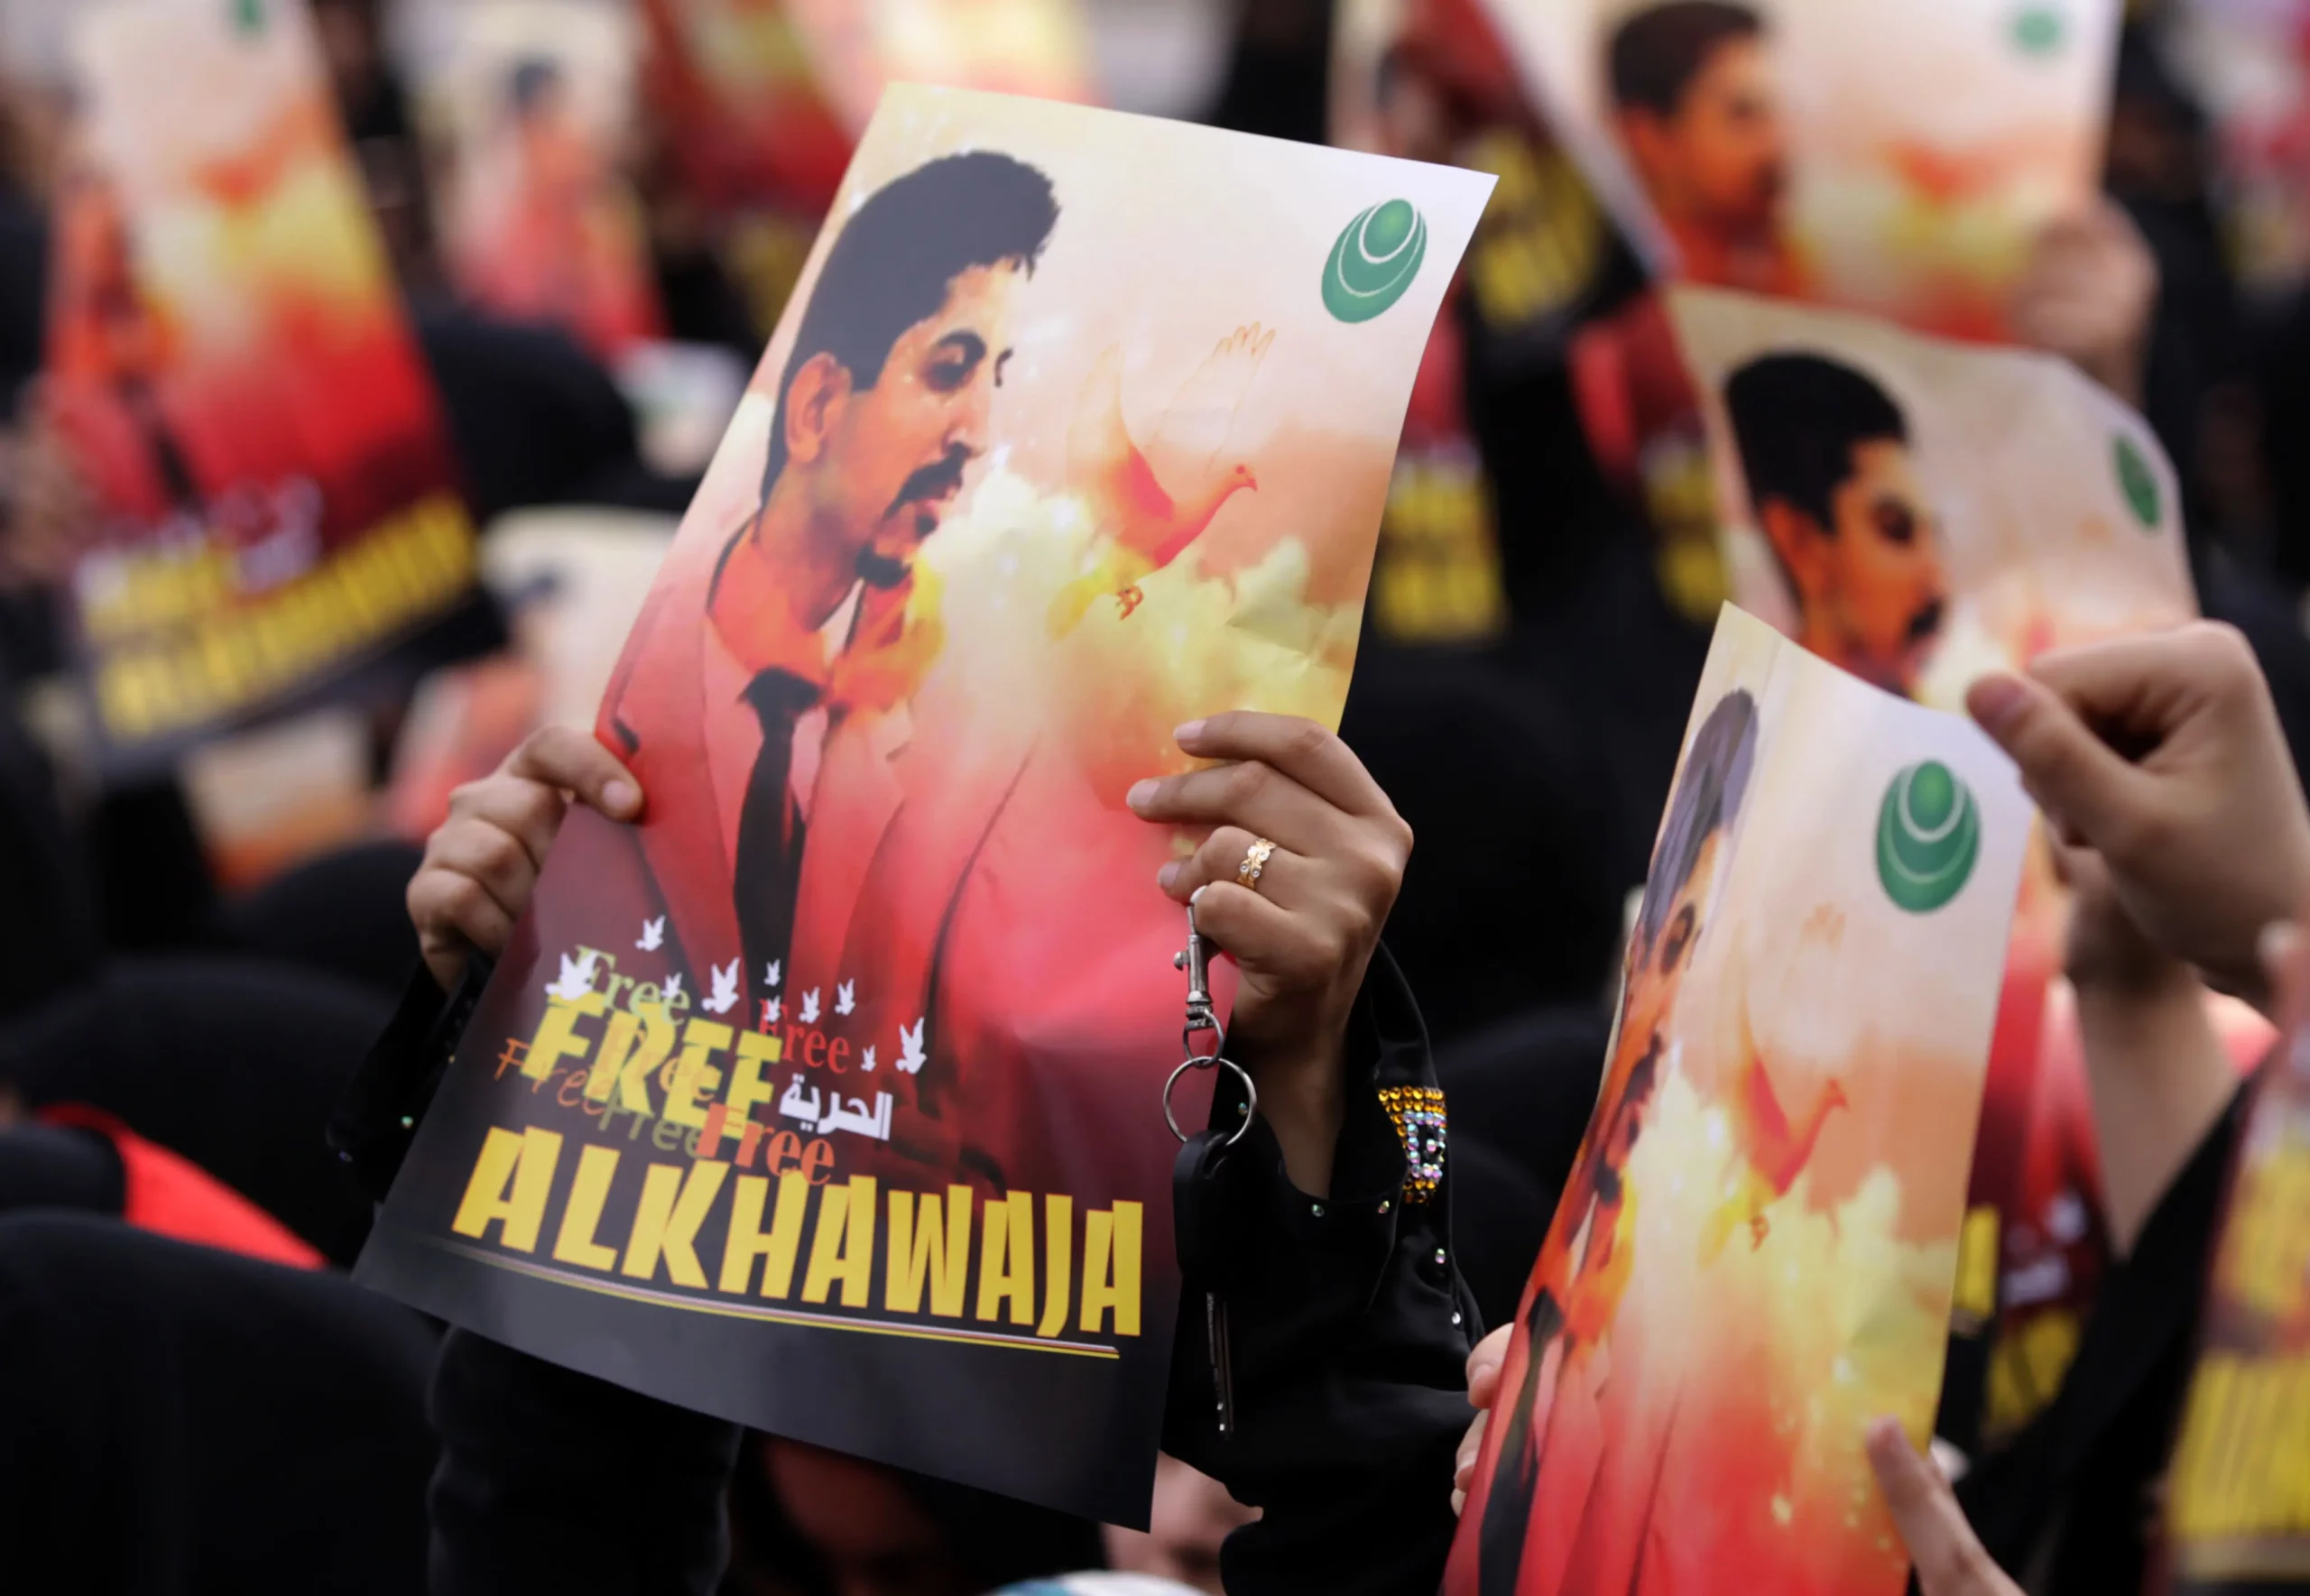 محتجون معارضون يرفعون لافتات تحمل صورة الناشط الحقوقي المسجون عبد الهادي الخواجة، الجمعة 6 أبريل/نيسان 2012 في جد حفص، البحرين